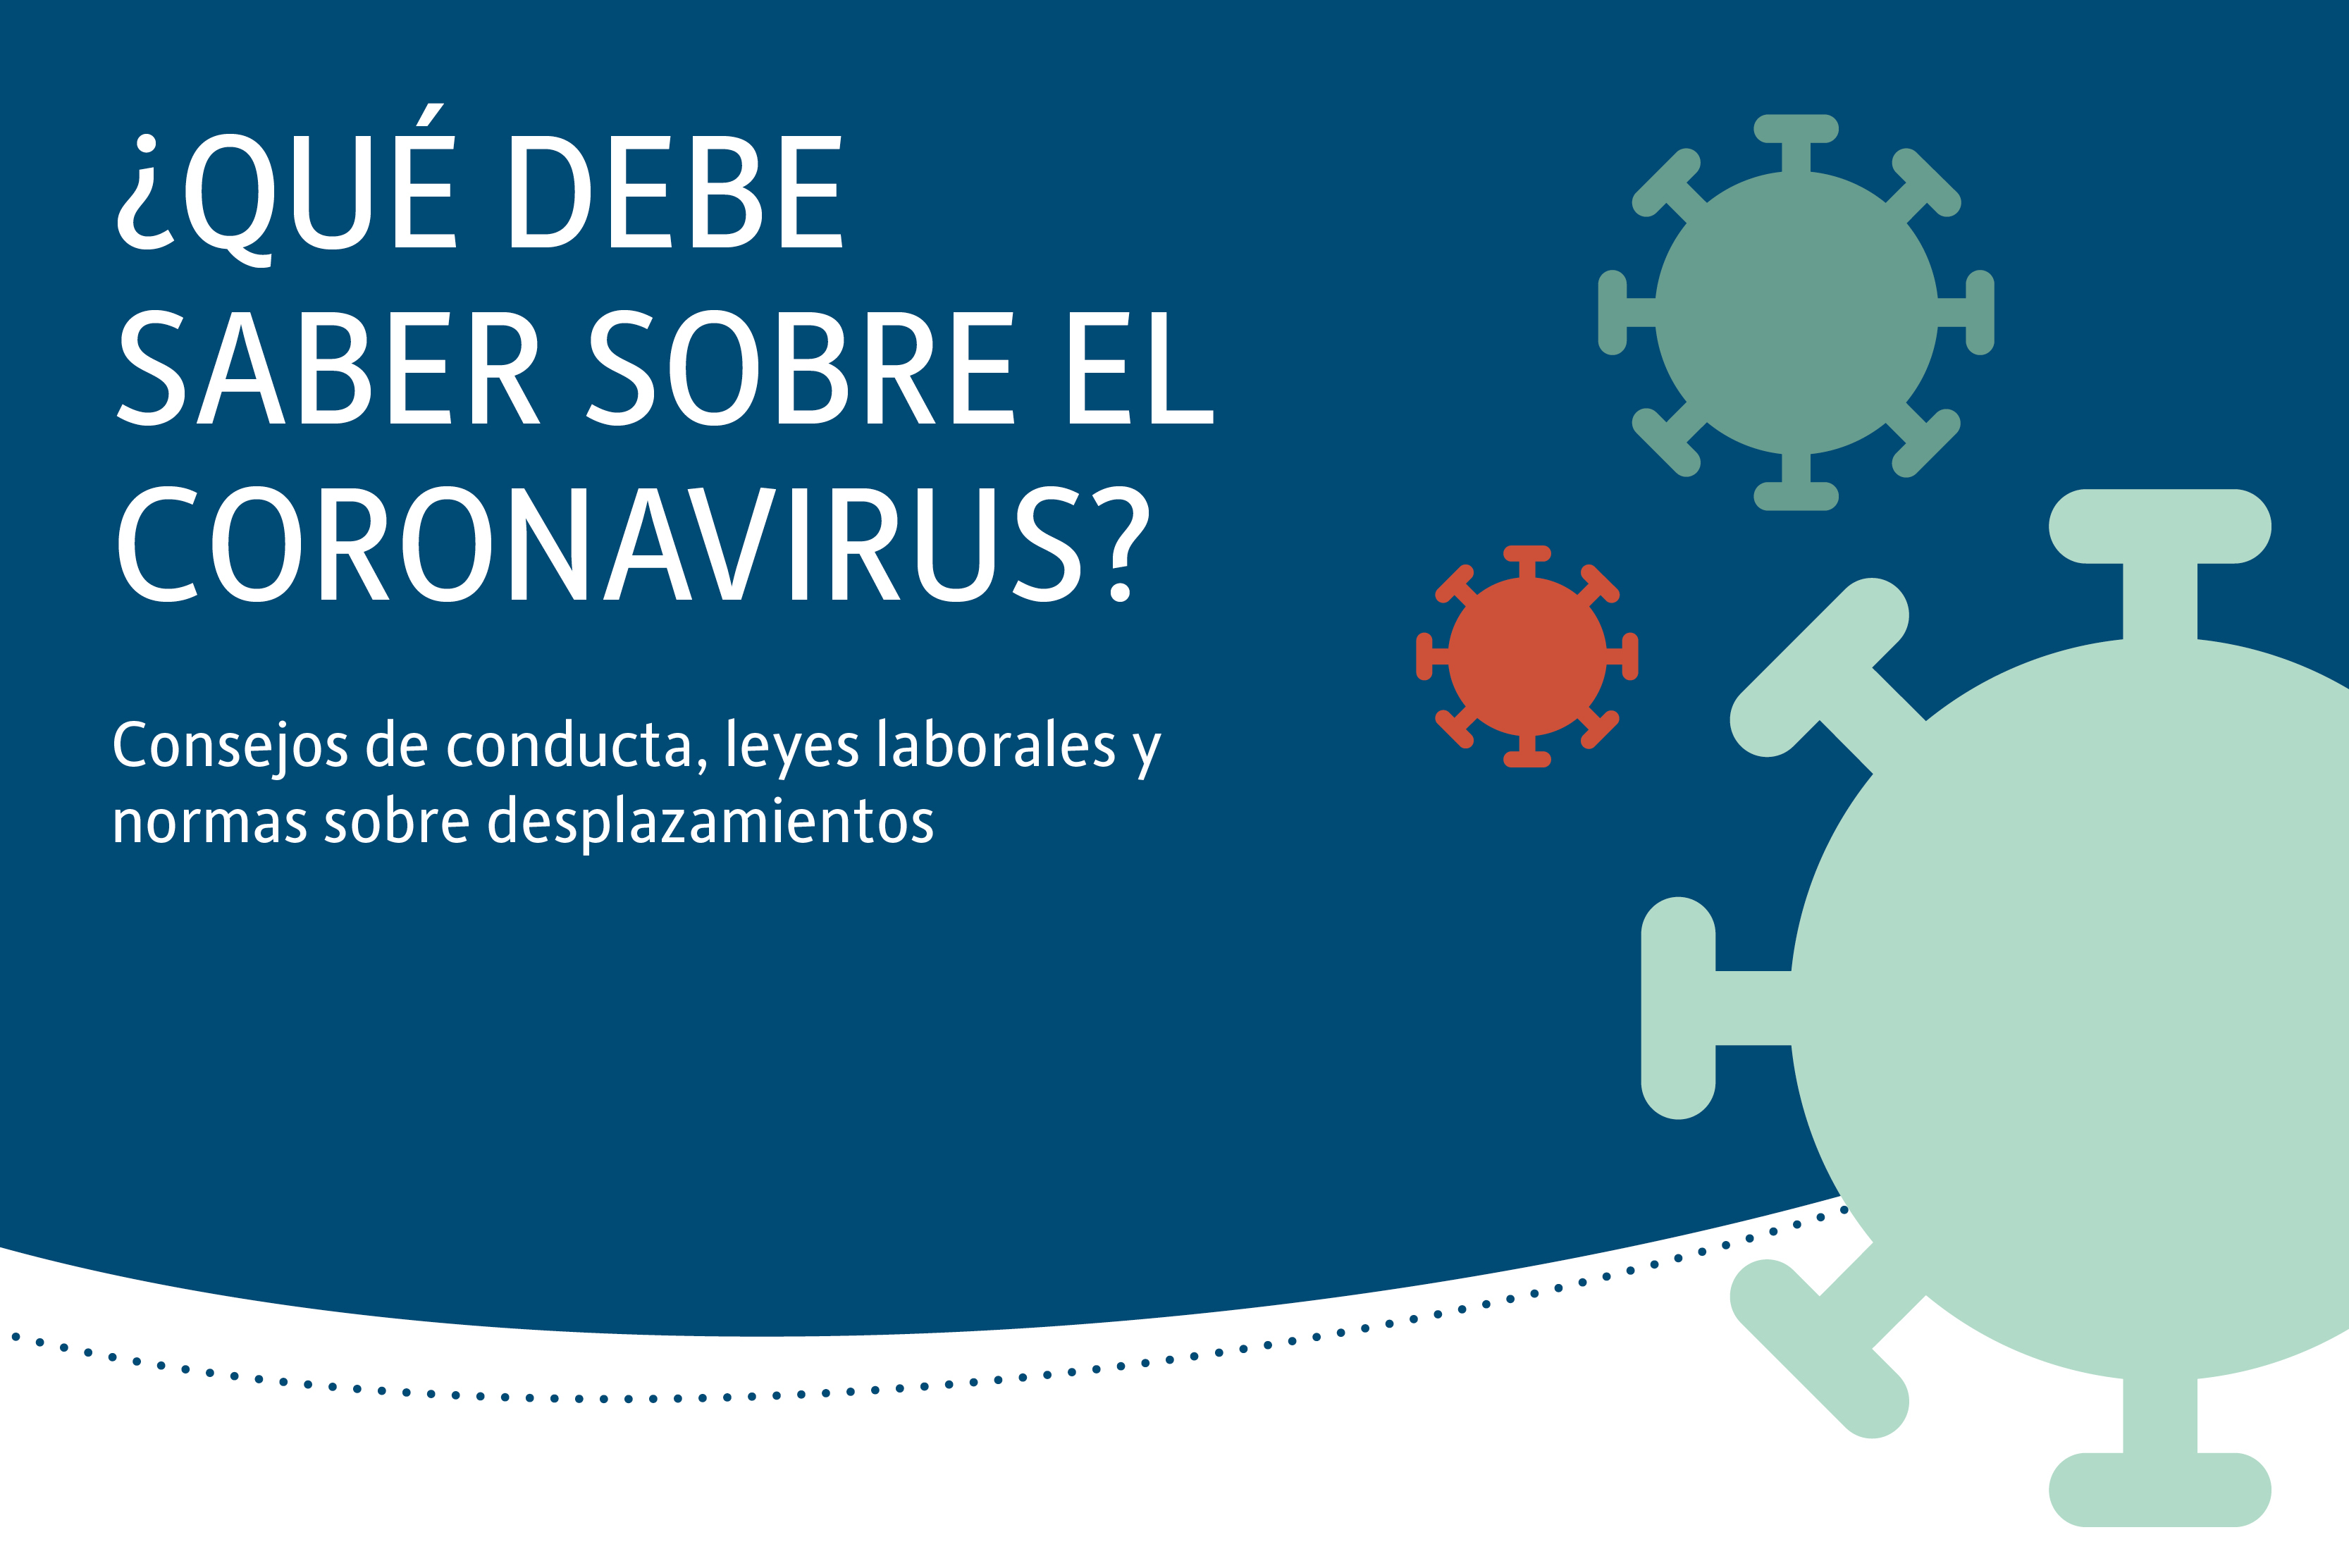 Grafische Darstellung des Coronavirus mit dem Text "Was Sie jetzt über Corona wissen müssen" - Verhaltenstipps, Arbeitsrecht und Reisebestimmungen auf einen Blick"